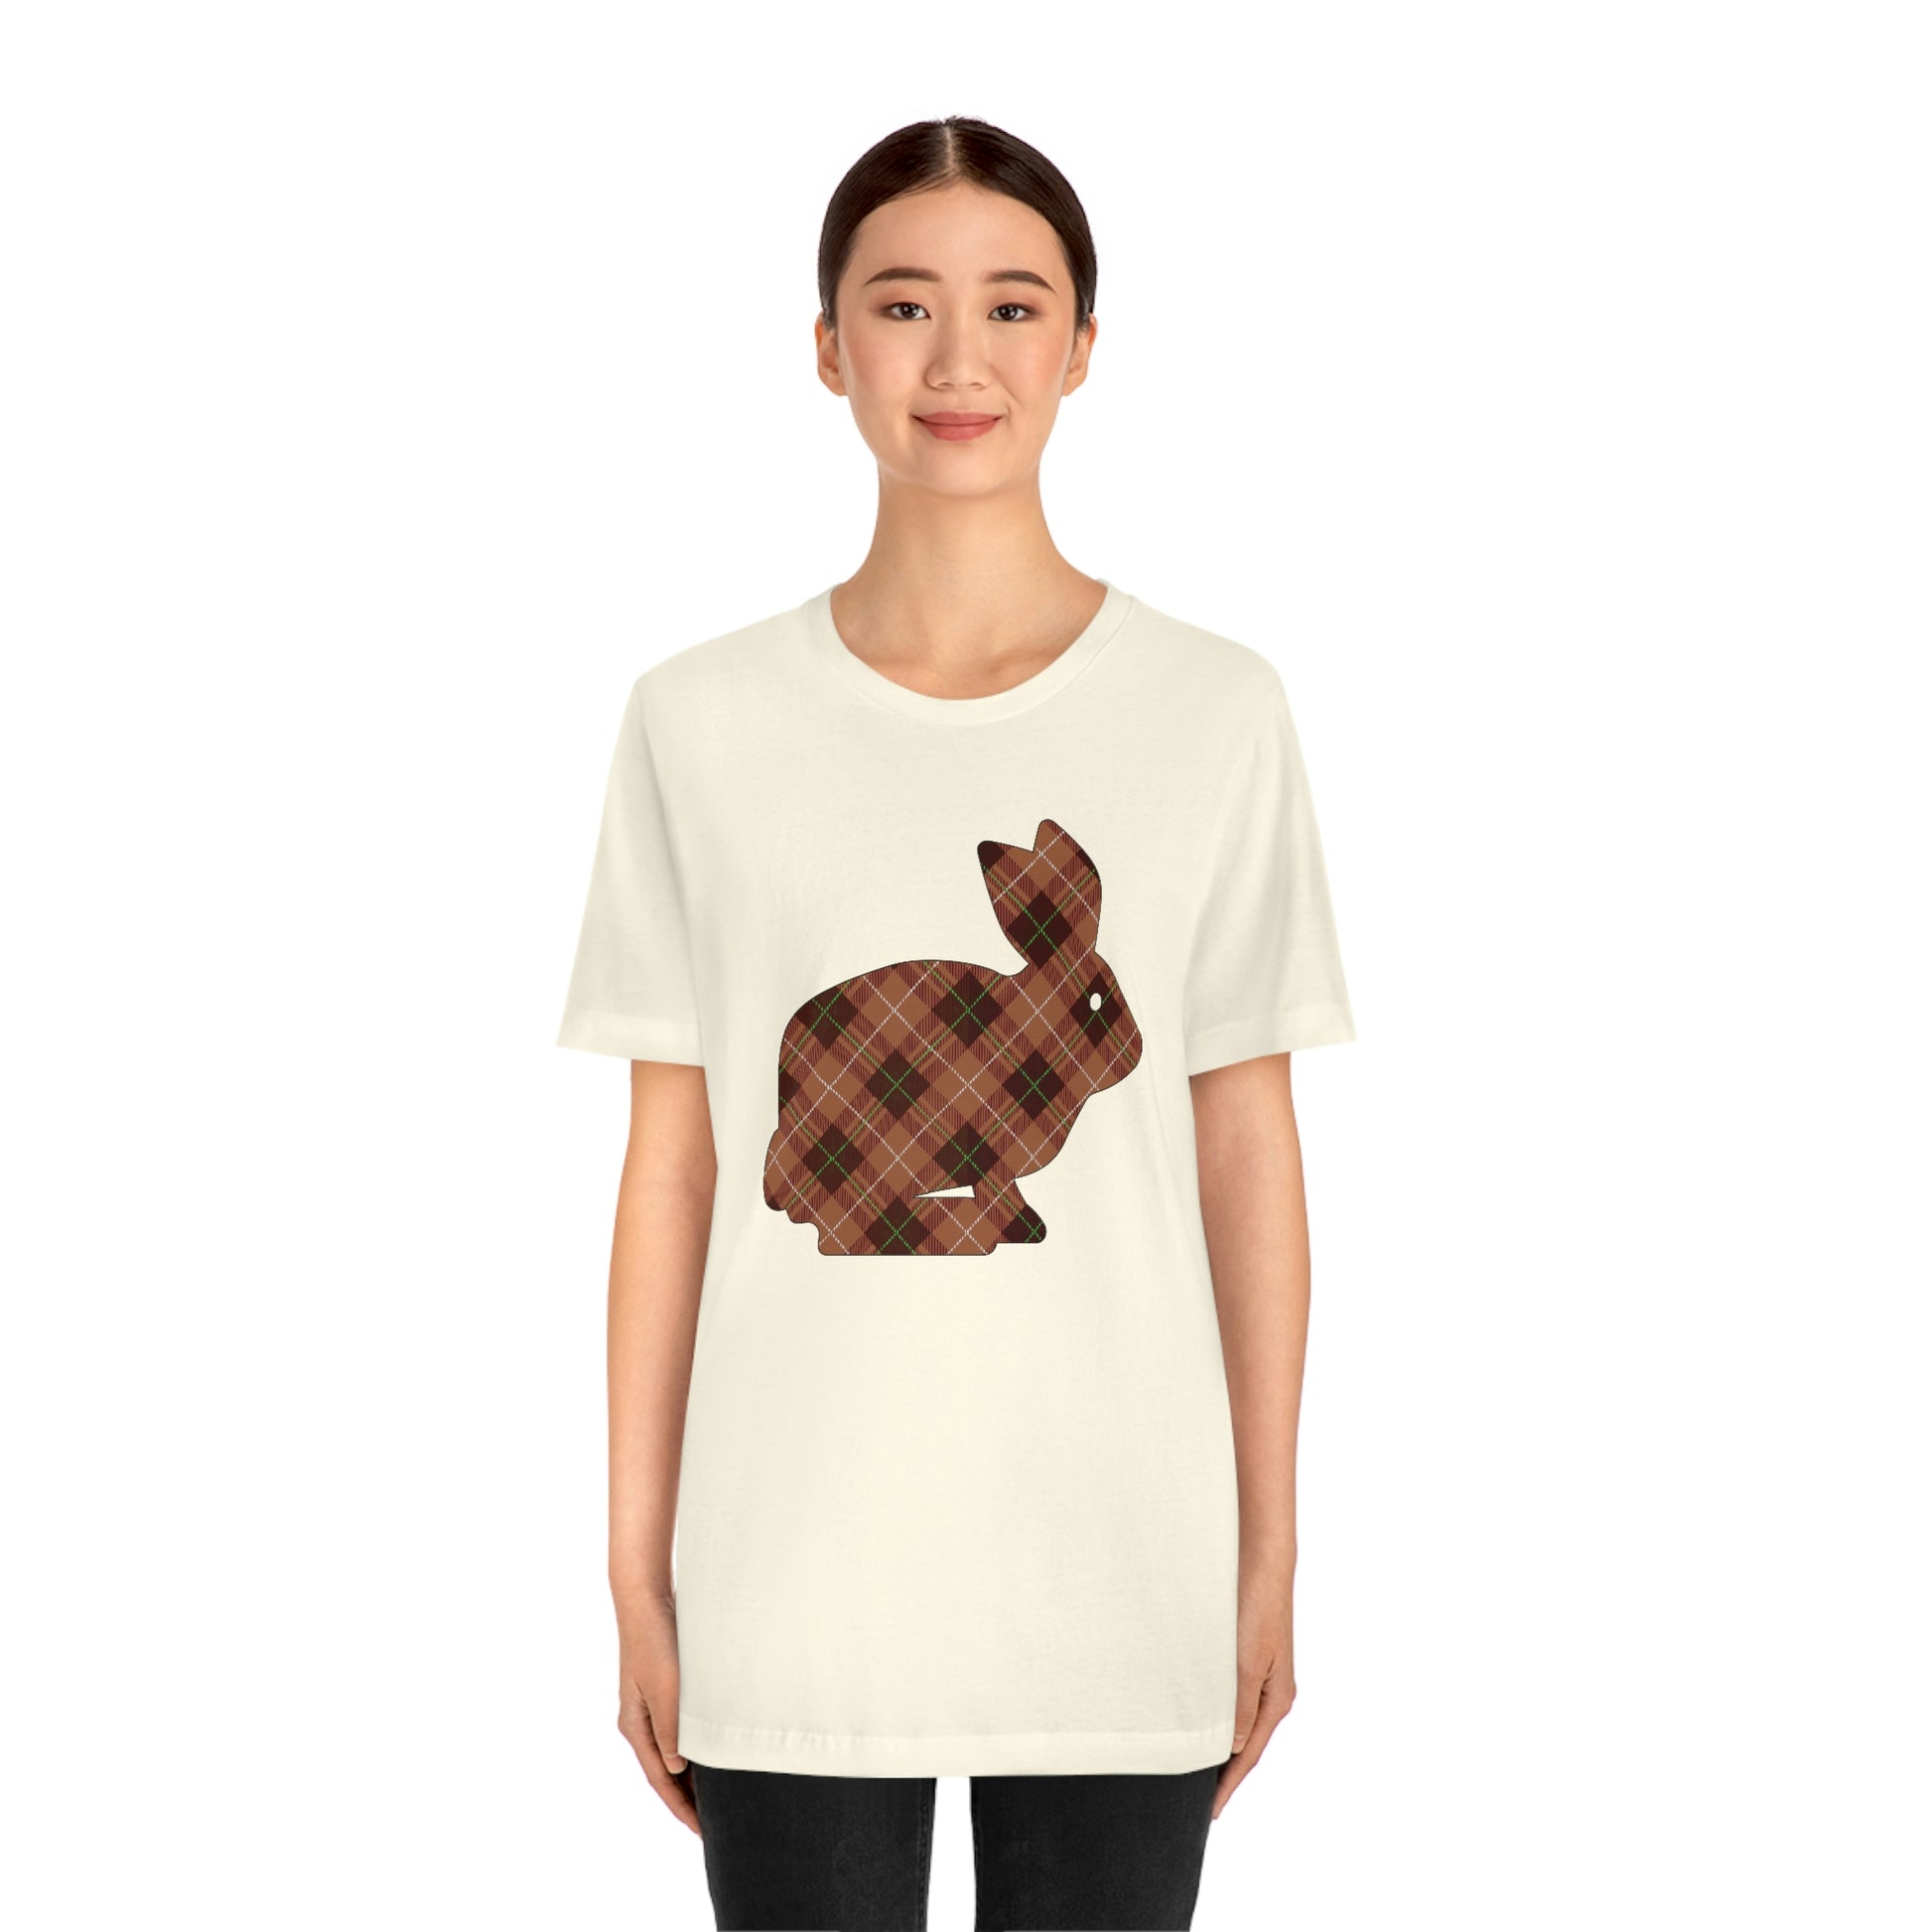 Brown Plaid Bunny Easter tshirt